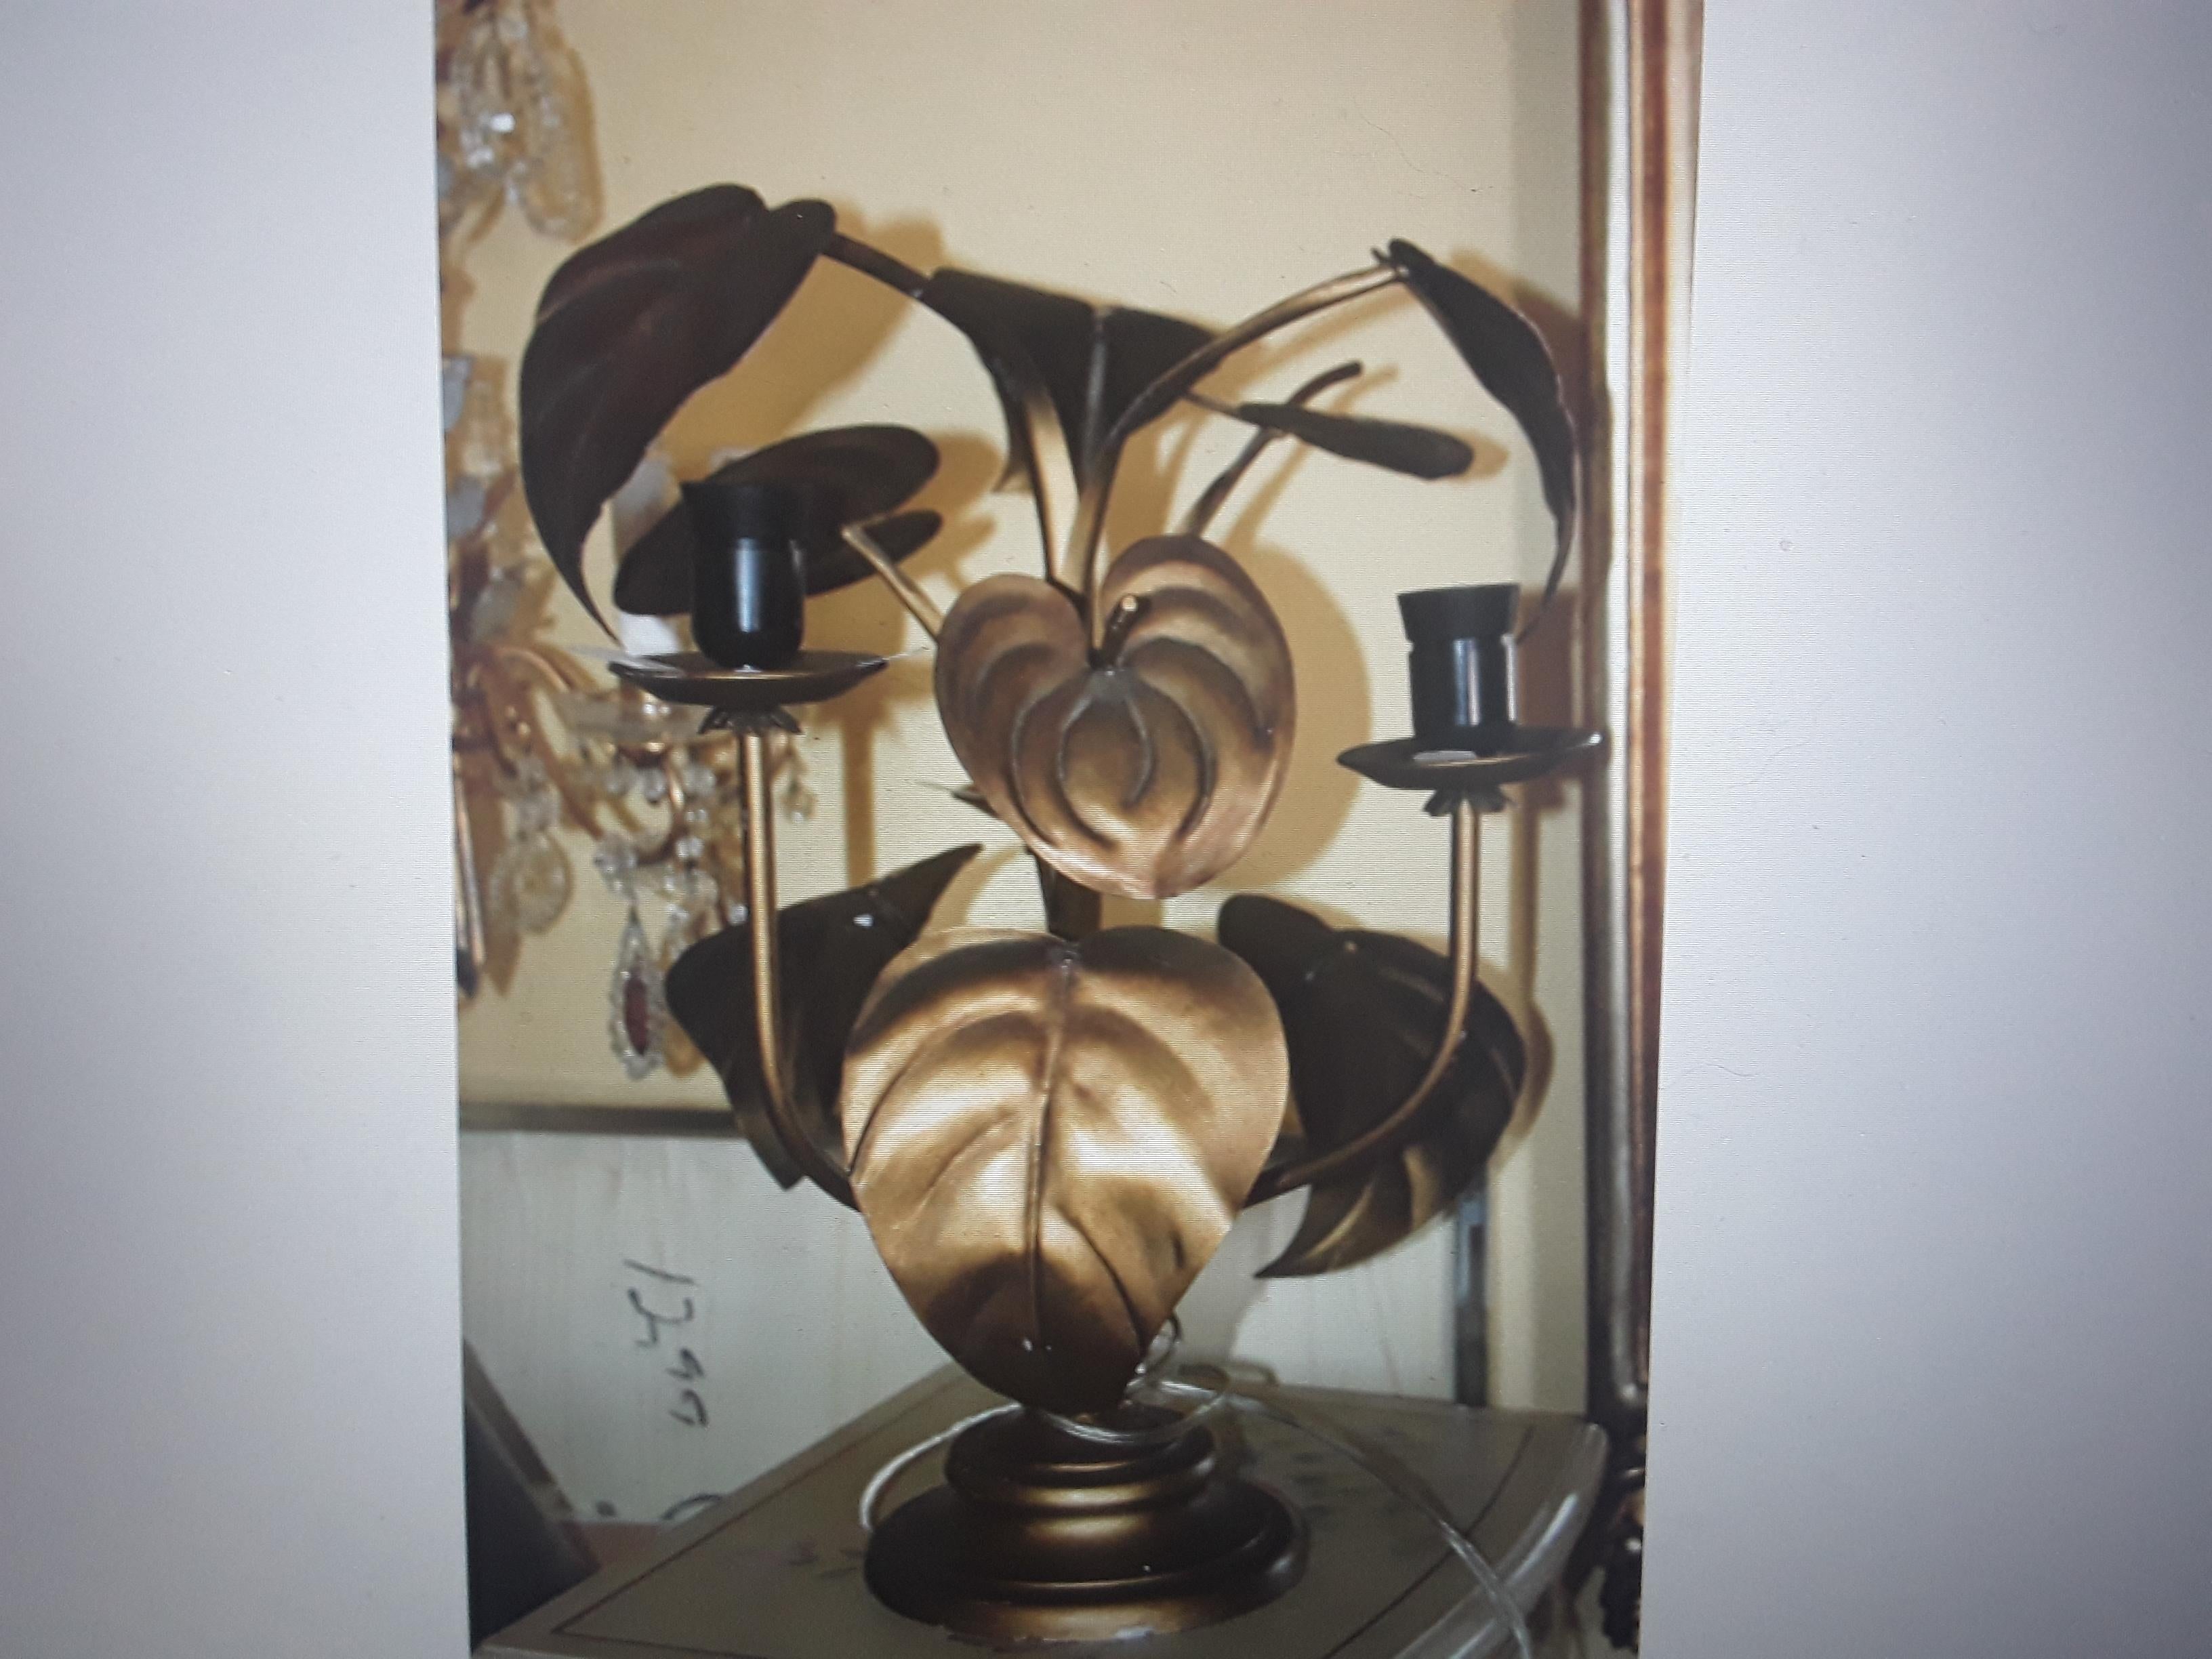 1950's Italian Mid Century Modern Vergoldetes Metall Anthurium Tischlampe Attrib. Tomasso Barbi. Dies ist eine schöne Wahl für eine Tischlampe.